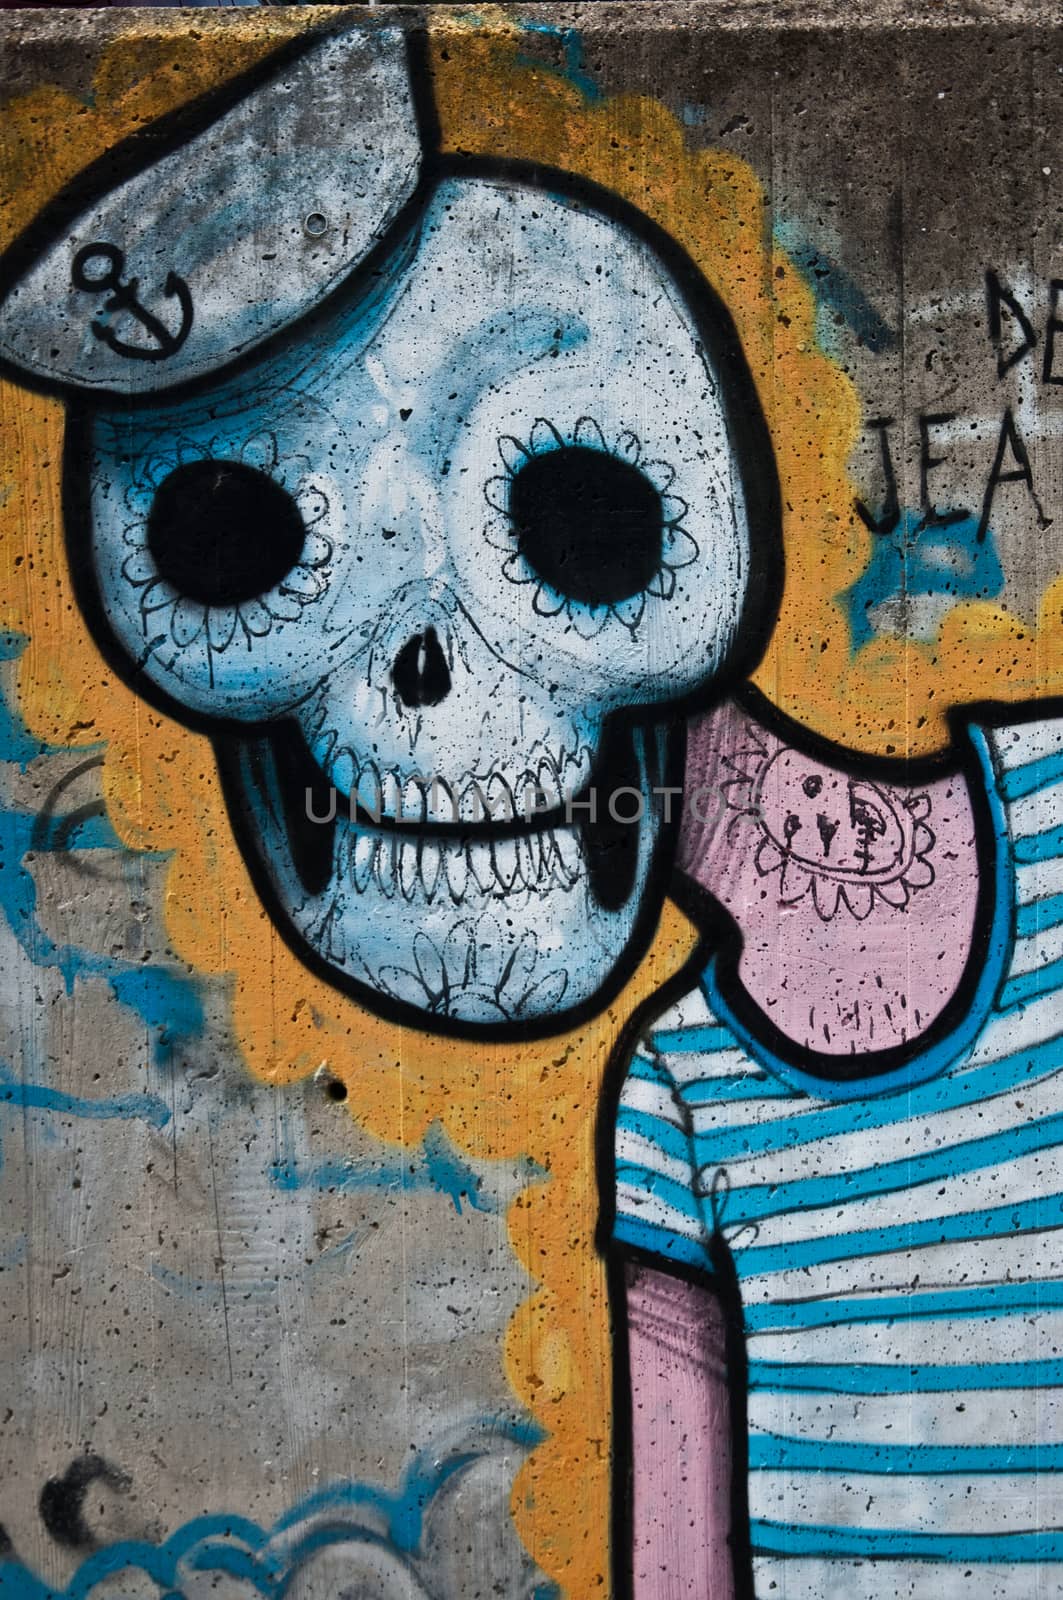 urban art - dead face by NeydtStock